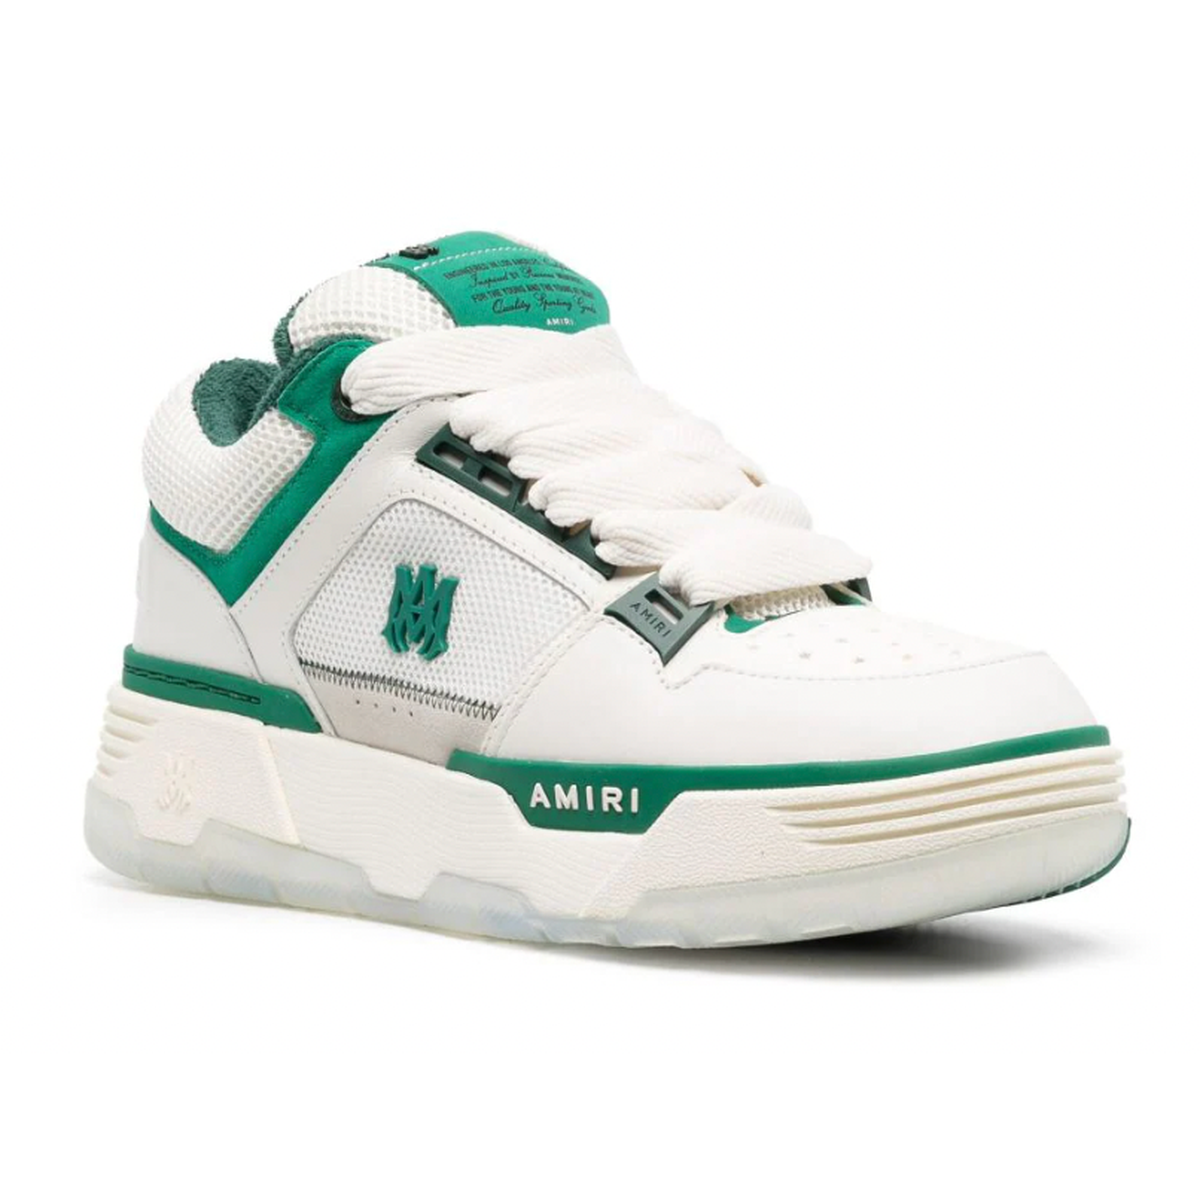 Amiri MA-1 Low Top Sneakers